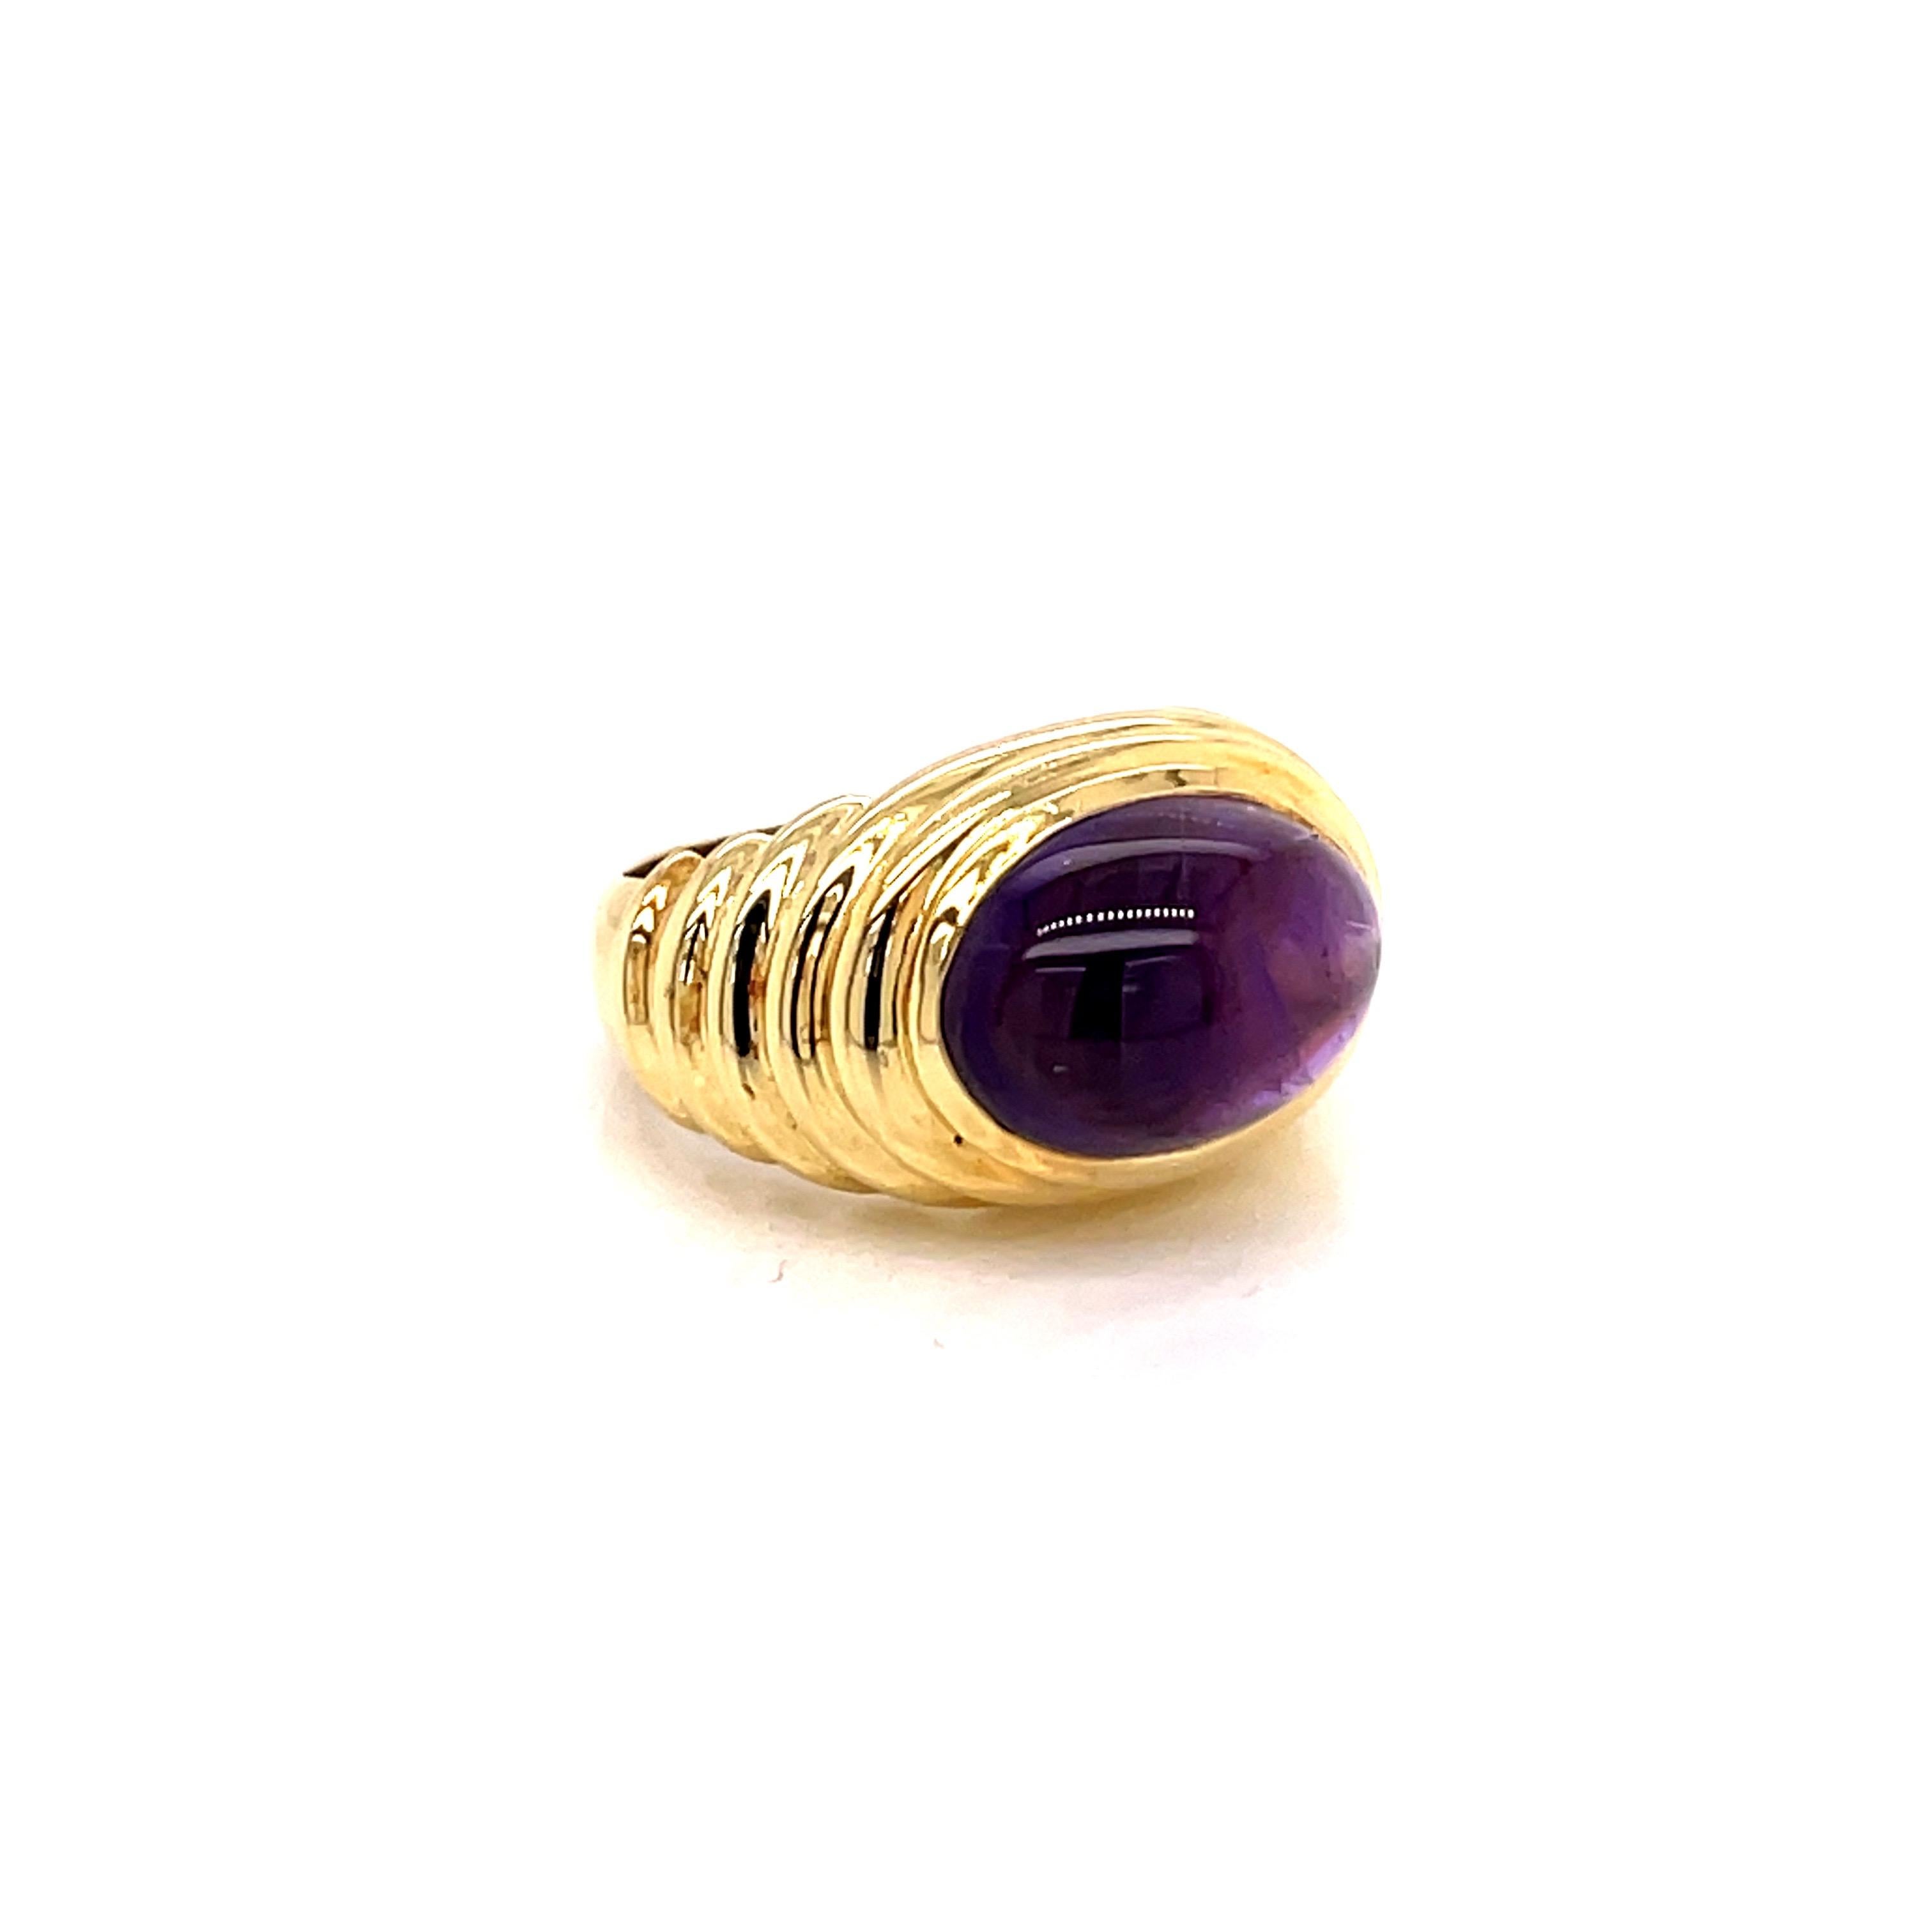 Vintage 1980's 5ct Oval Cabochon Amethyst Ring  - der Amethyst wiegt etwa 5ct und misst 13,5 x 9,5mm.   Die Fassung ist aus 18k Gelbgold mit einer Fingergröße 6, die auf Anfrage angepasst werden kann.  Der Ring wiegt 10 Gramm